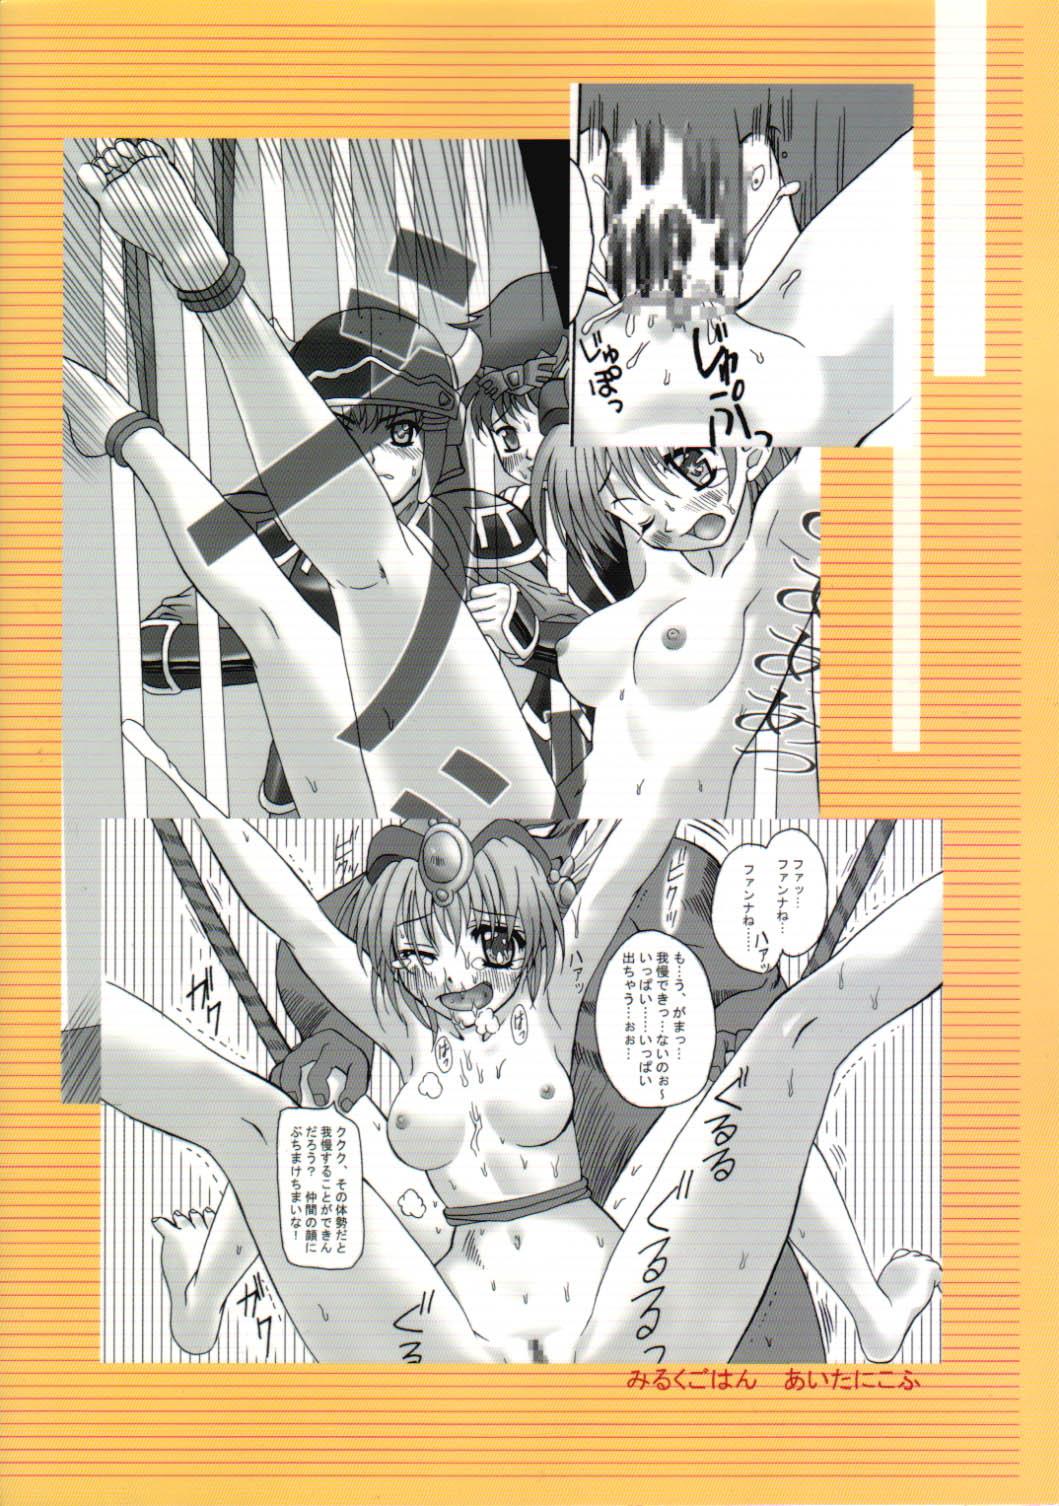 Leite Toraware no Shoujo - Kouryuu densetsu villgust Ballbusting - Page 26